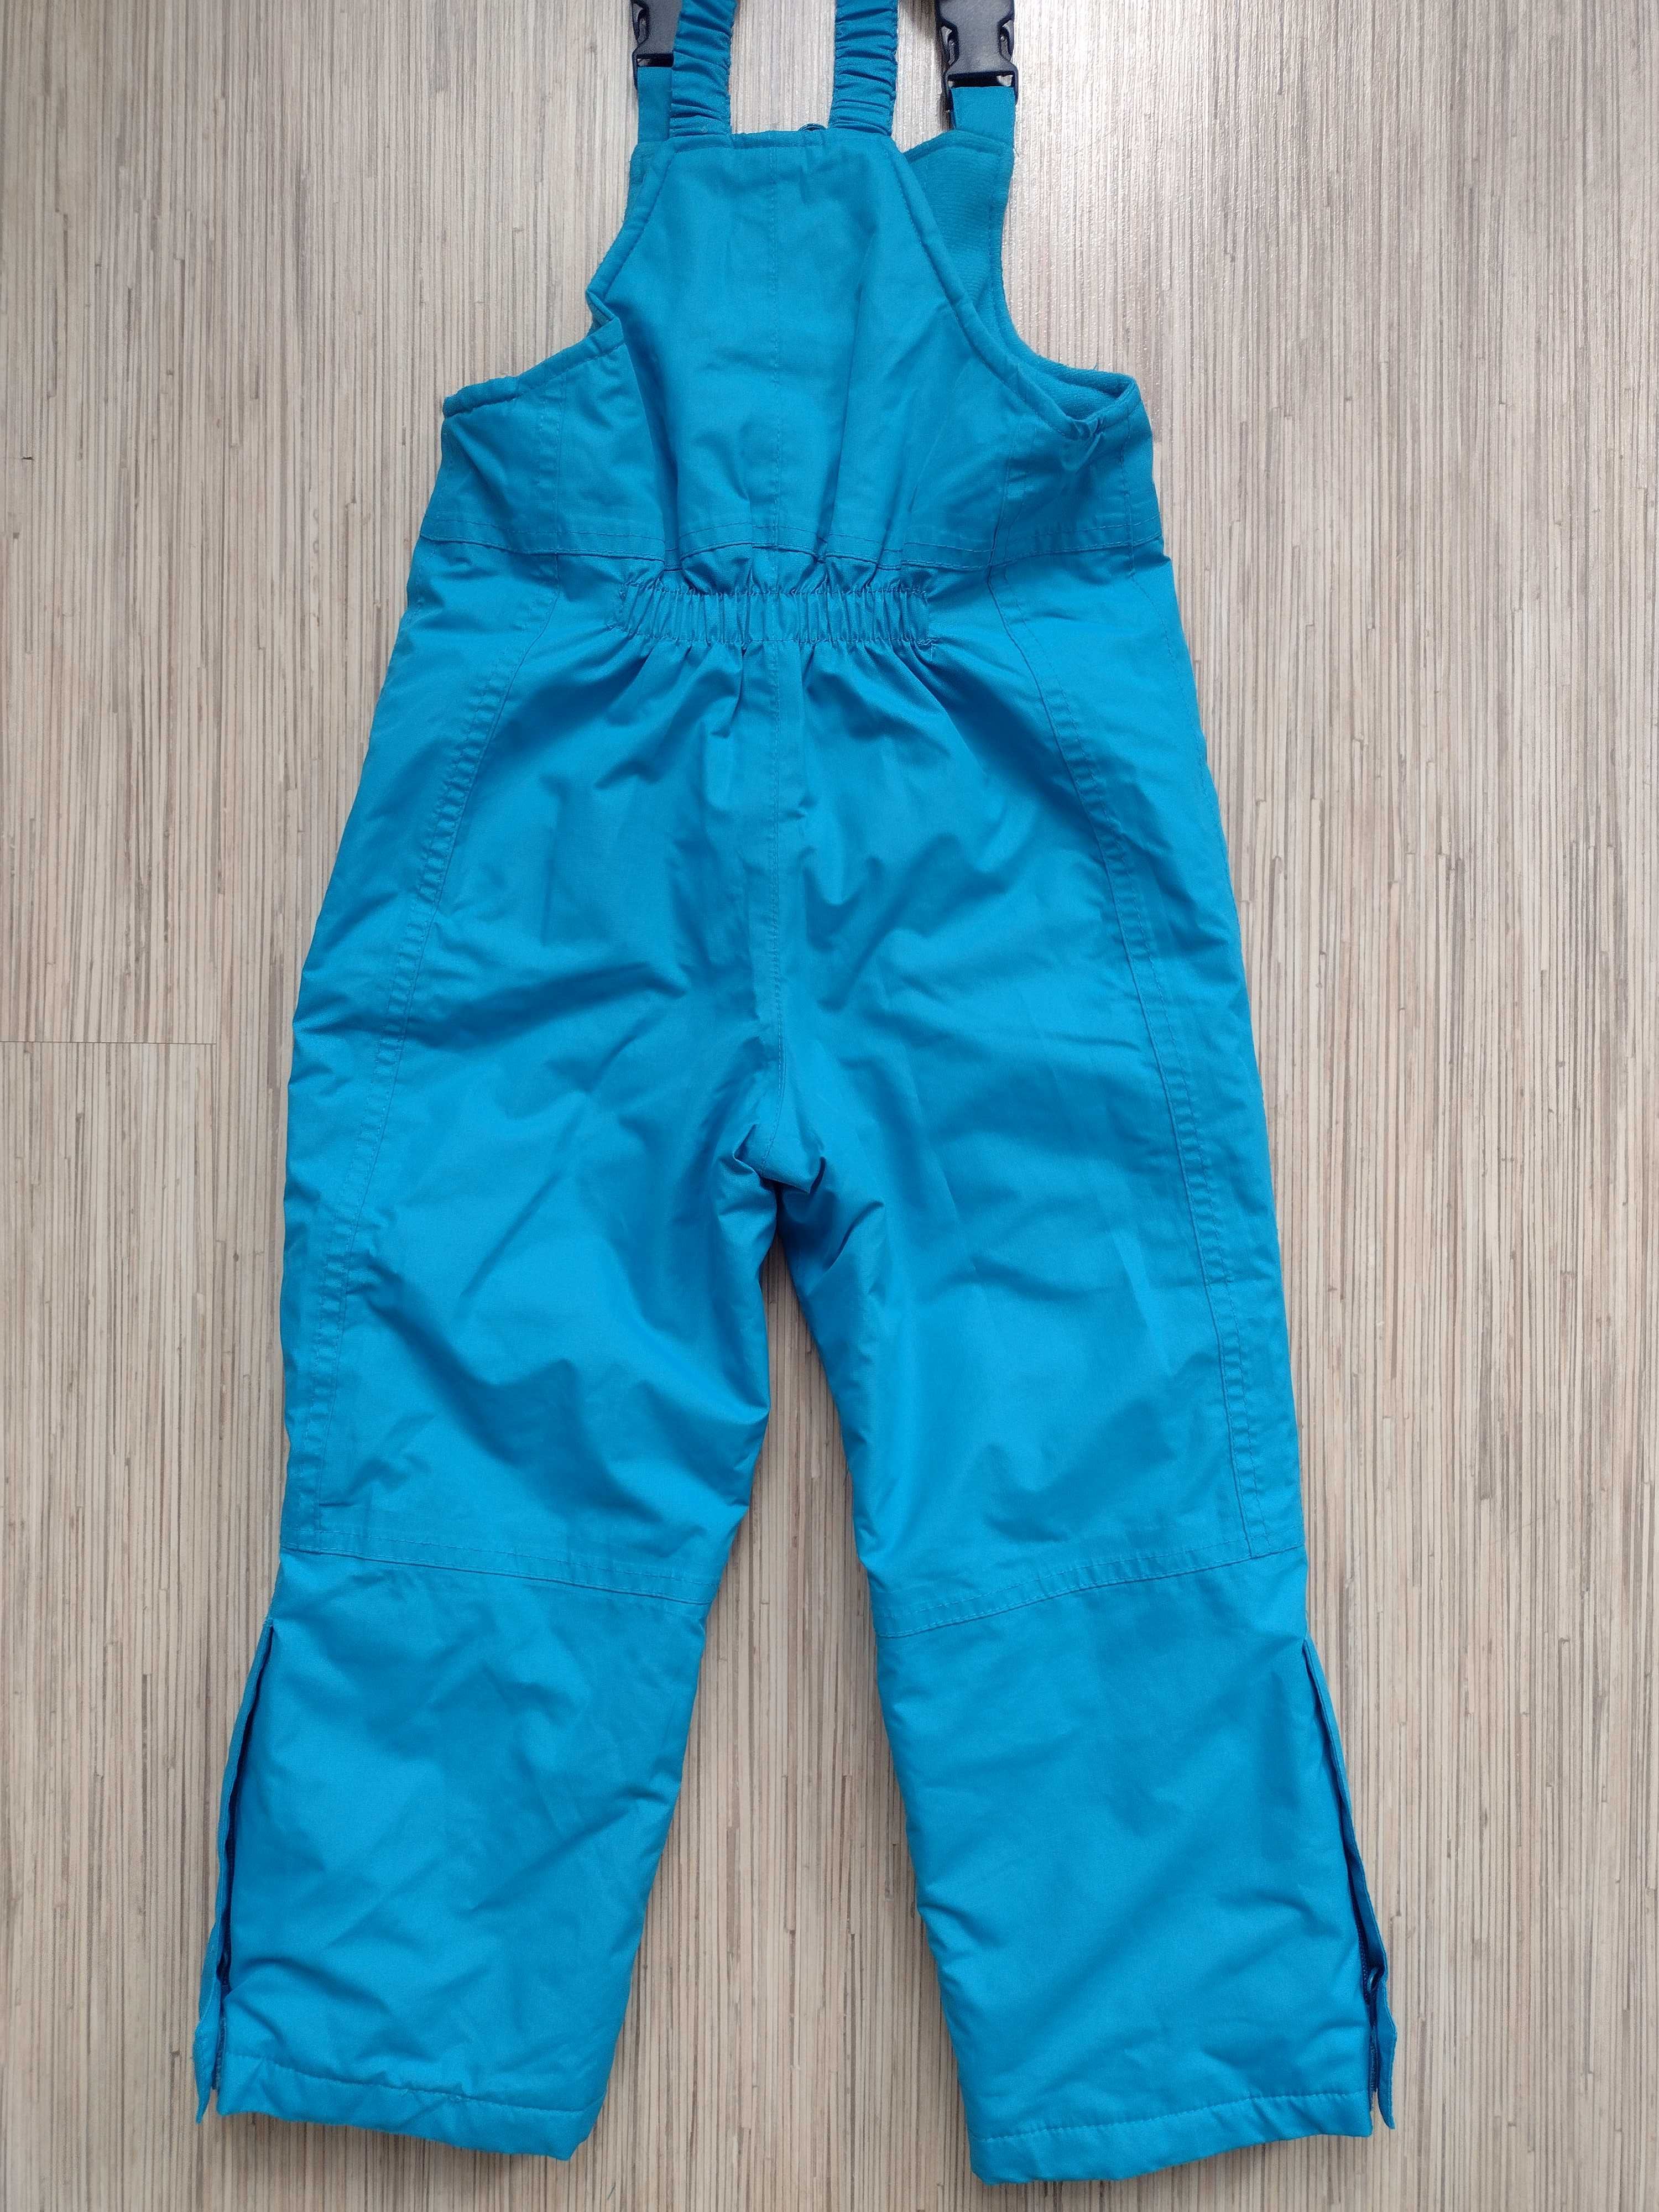 IMPIDIMPI, rozmiar 98/104, spodnie narciarskie dla chłopca